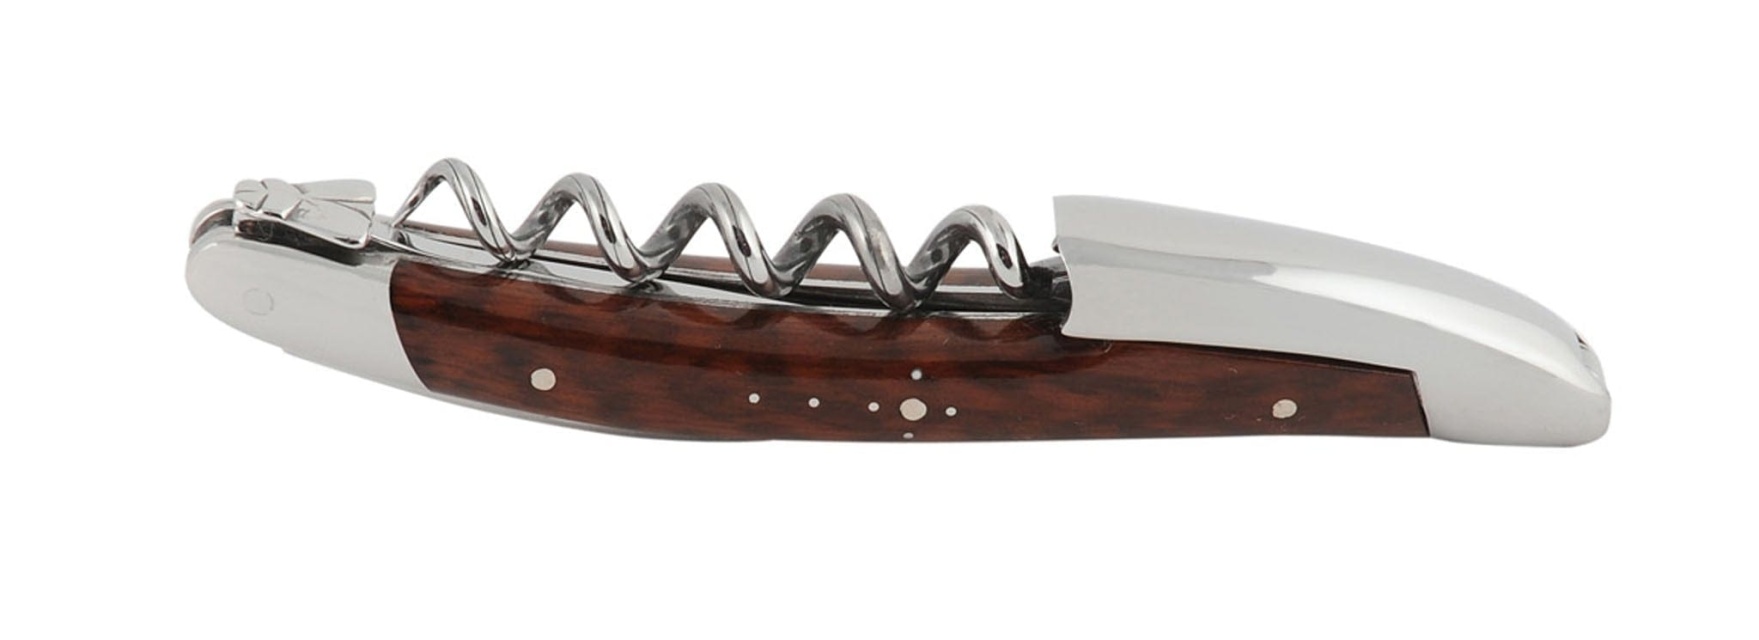 Sommelier waiter's knife, snakewood handle